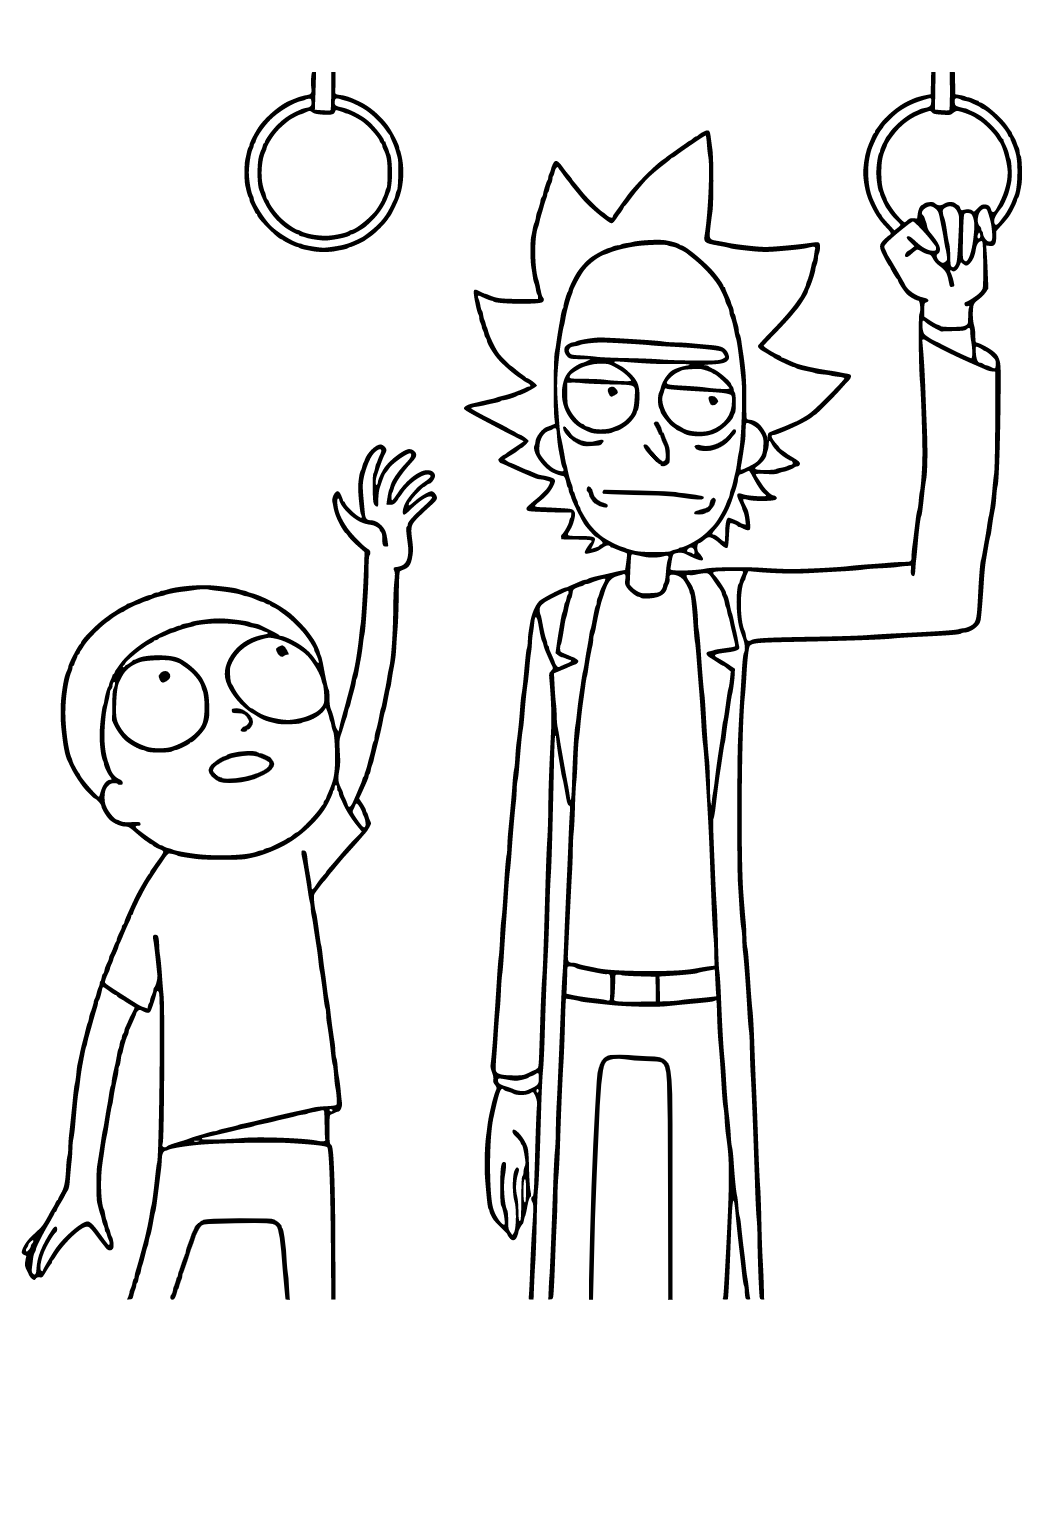 Rick in Morty